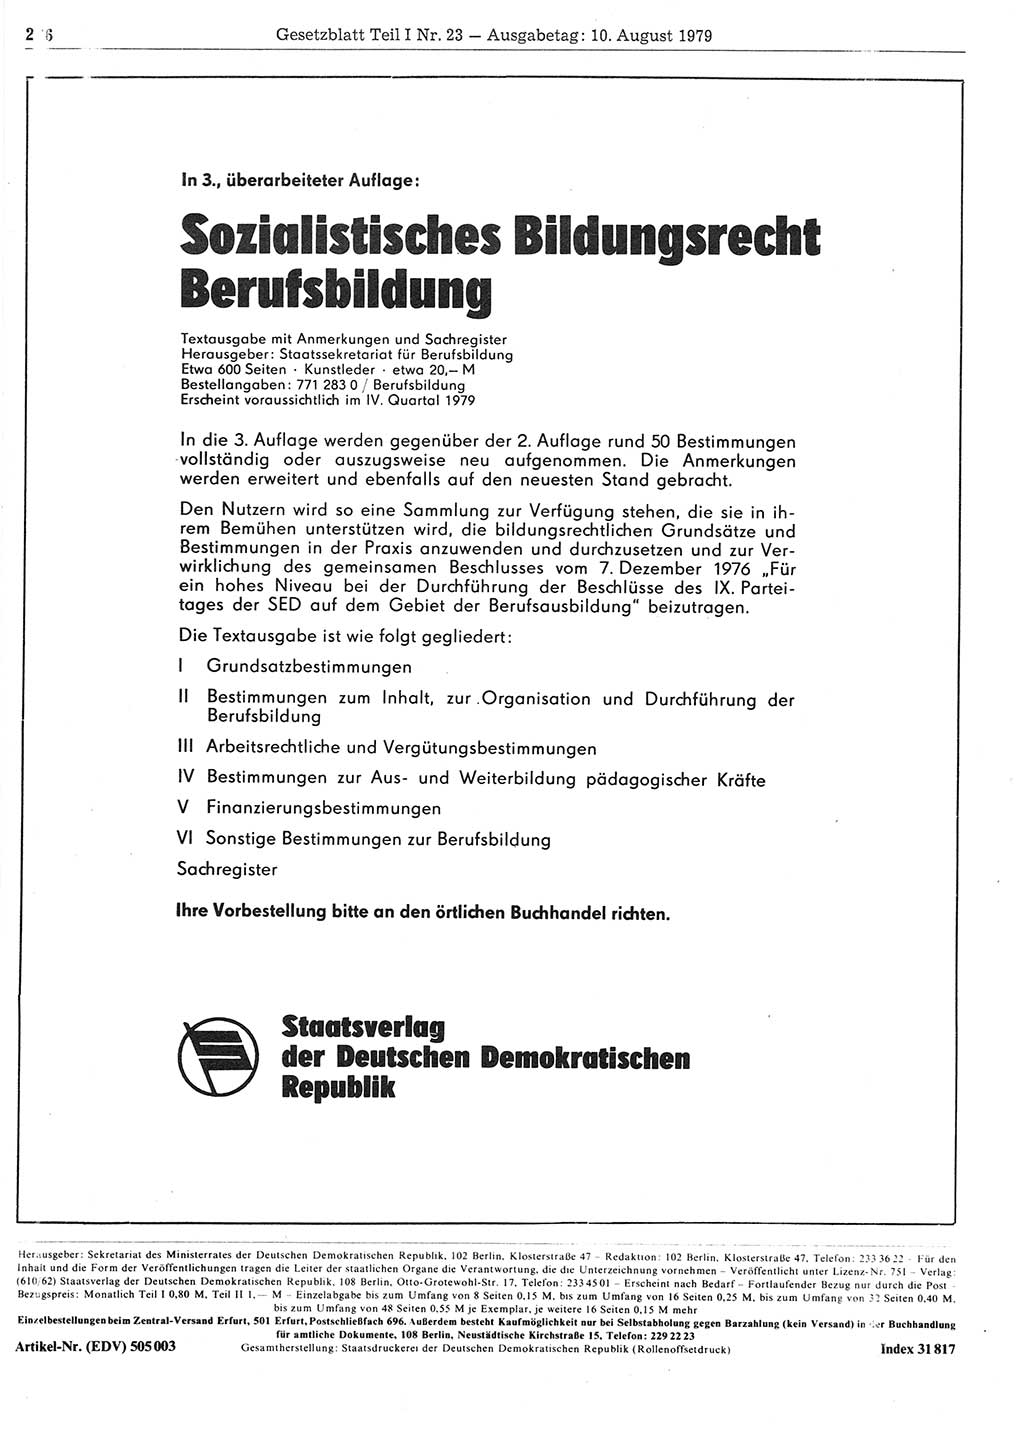 Gesetzblatt (GBl.) der Deutschen Demokratischen Republik (DDR) Teil Ⅰ 1979, Seite 226 (GBl. DDR Ⅰ 1979, S. 226)